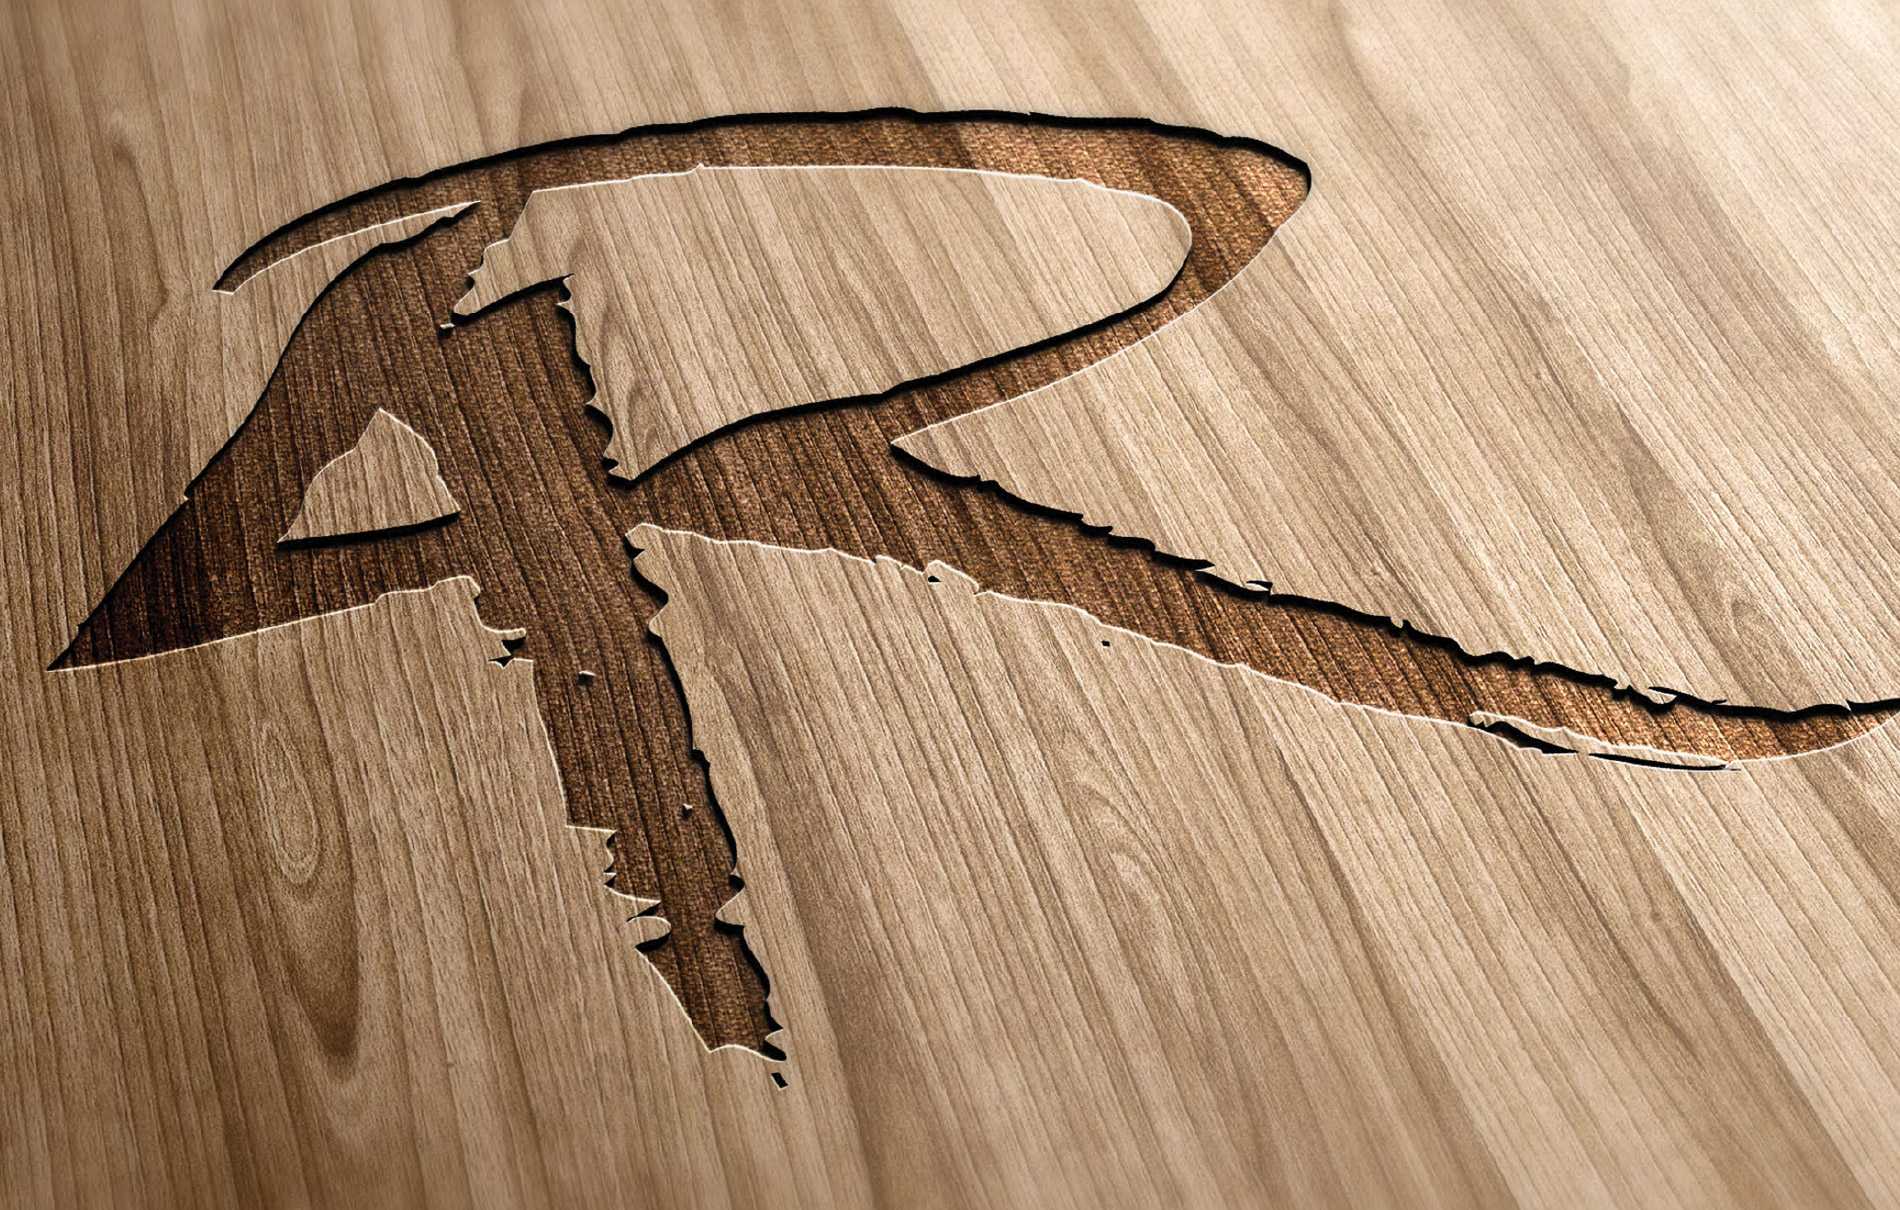 4Rivers Smokehouse award-winning logo design